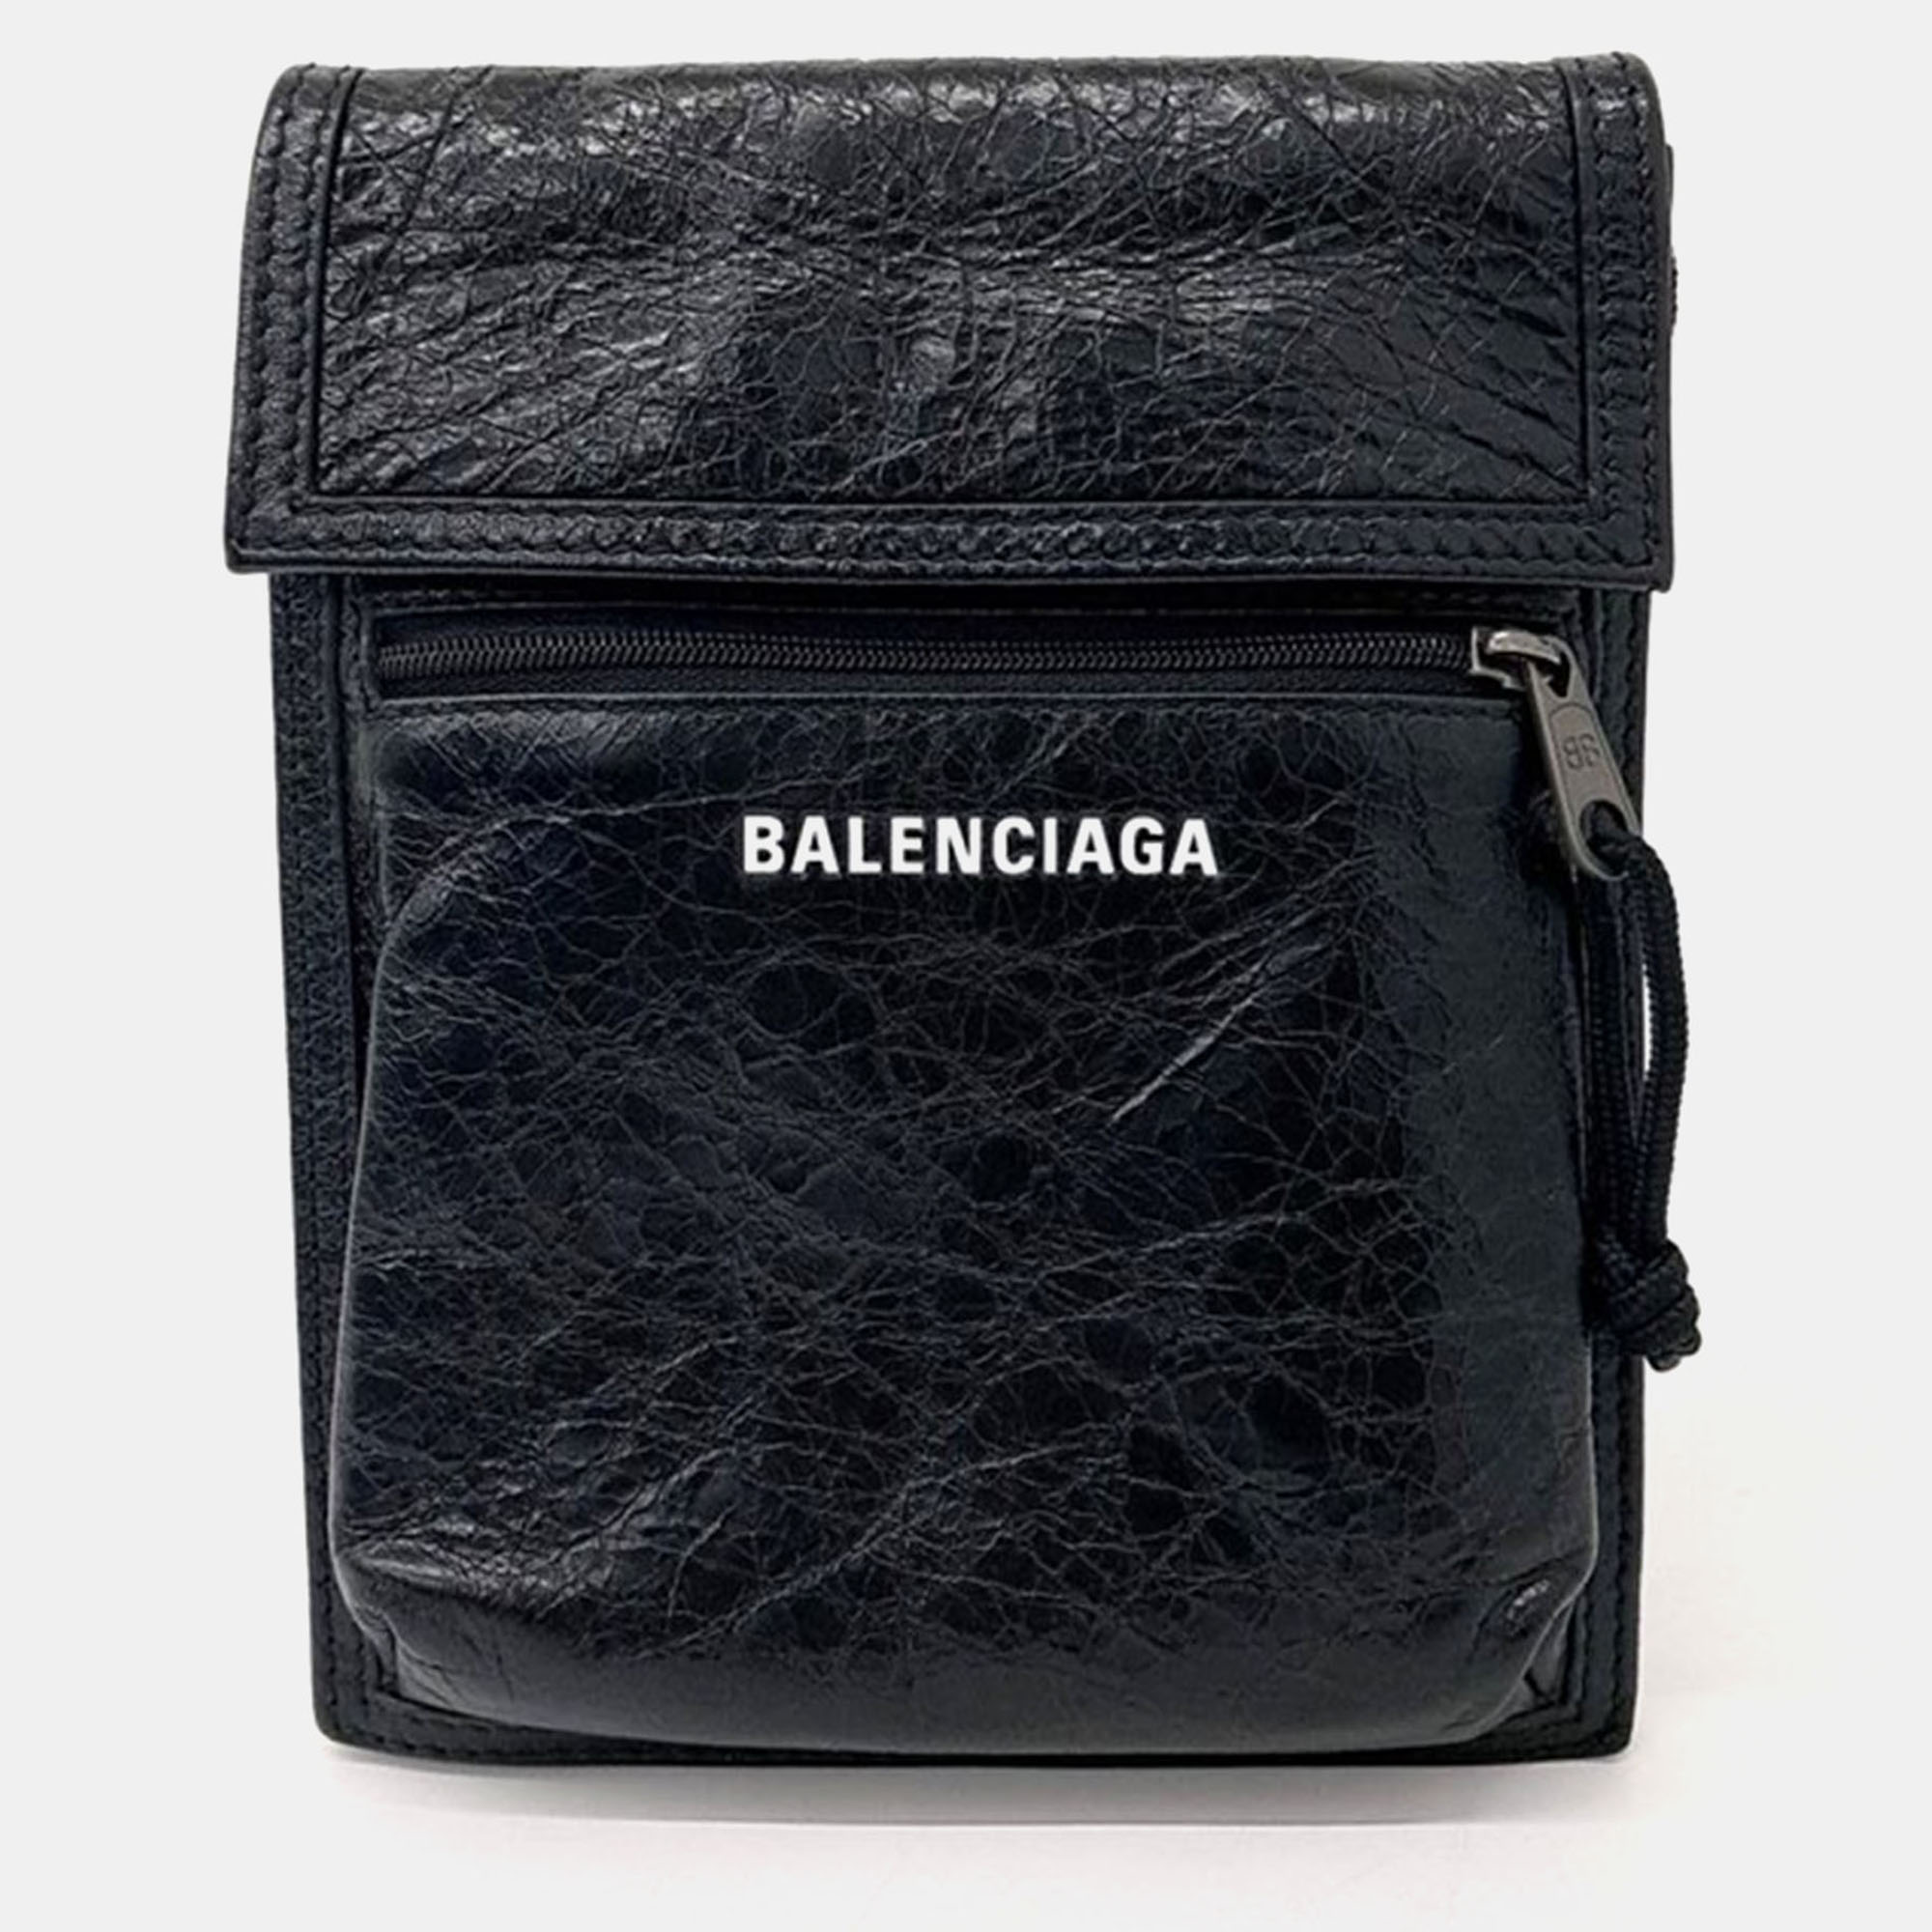 Balenciaga explorer mini crossbody bag